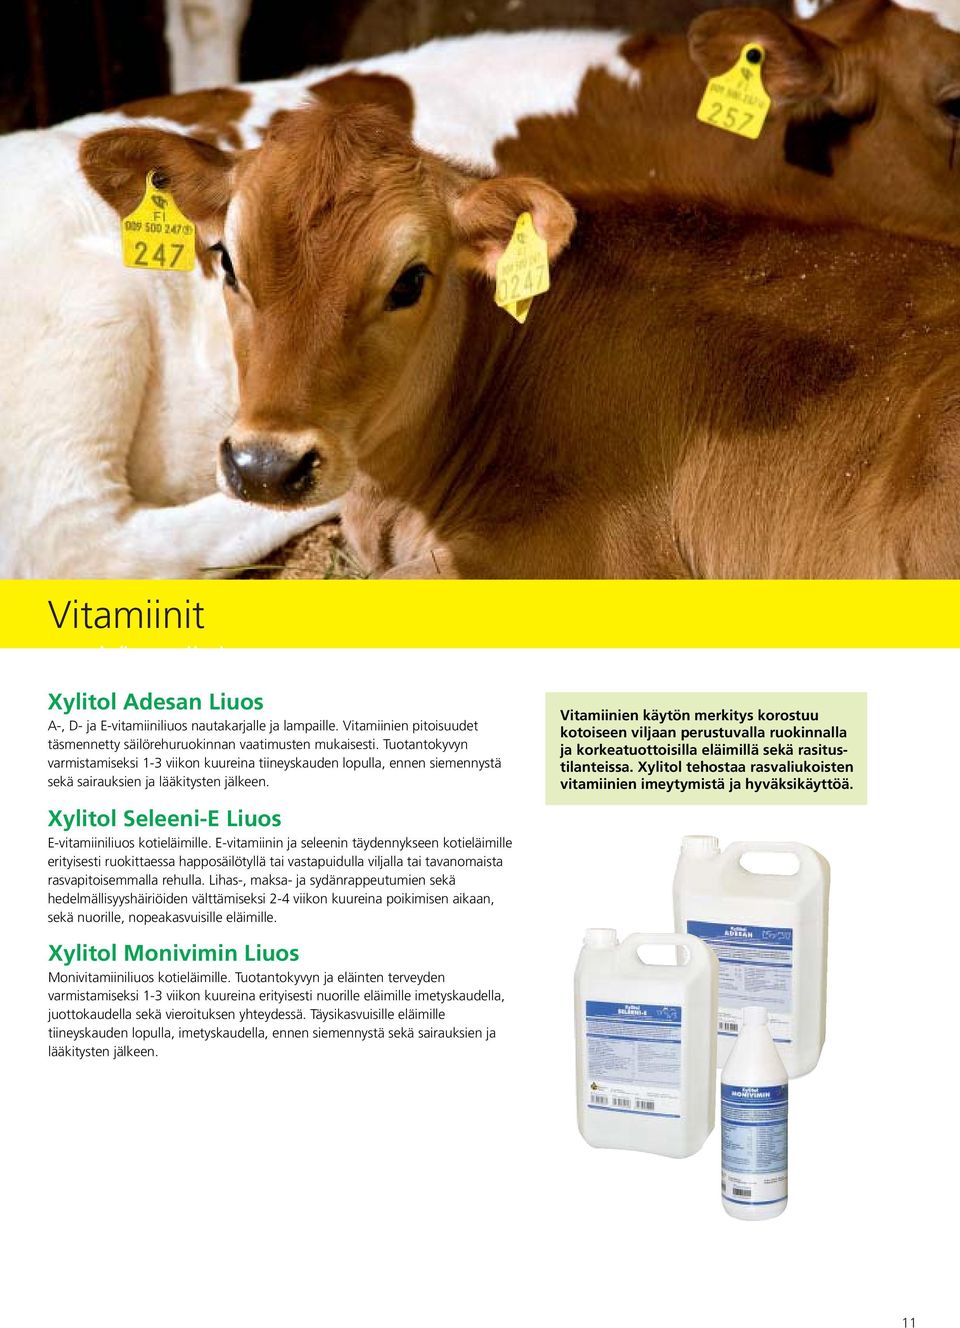 Vitamiinien käytön merkitys korostuu kotoiseen viljaan perustuvalla ruokinnalla ja korkeatuottoisilla eläimillä sekä rasitustilanteissa.